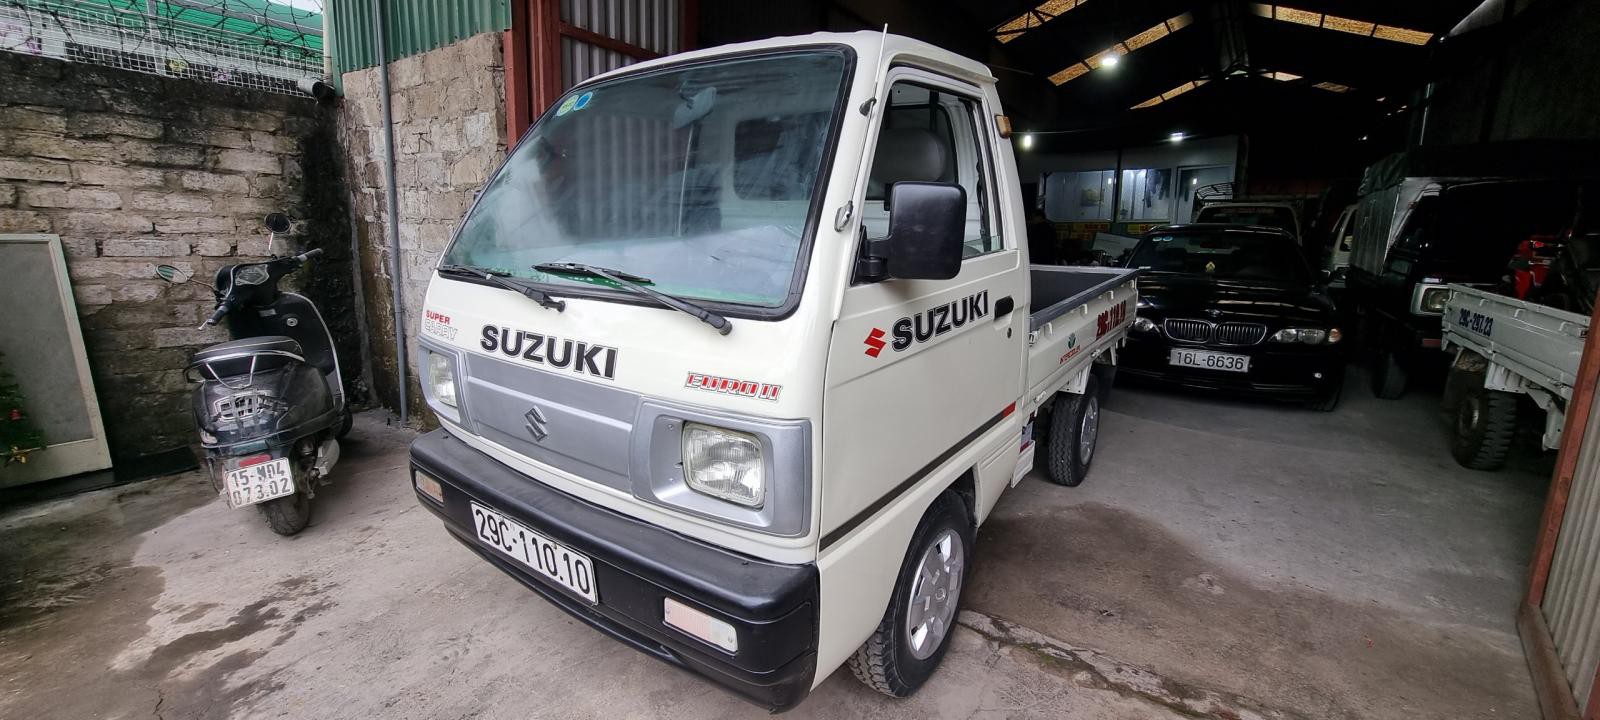 Bán Suzuki 6 tạ cũ thùng lửng đời 2011 tại Hải Phòng lh 090.605.3322